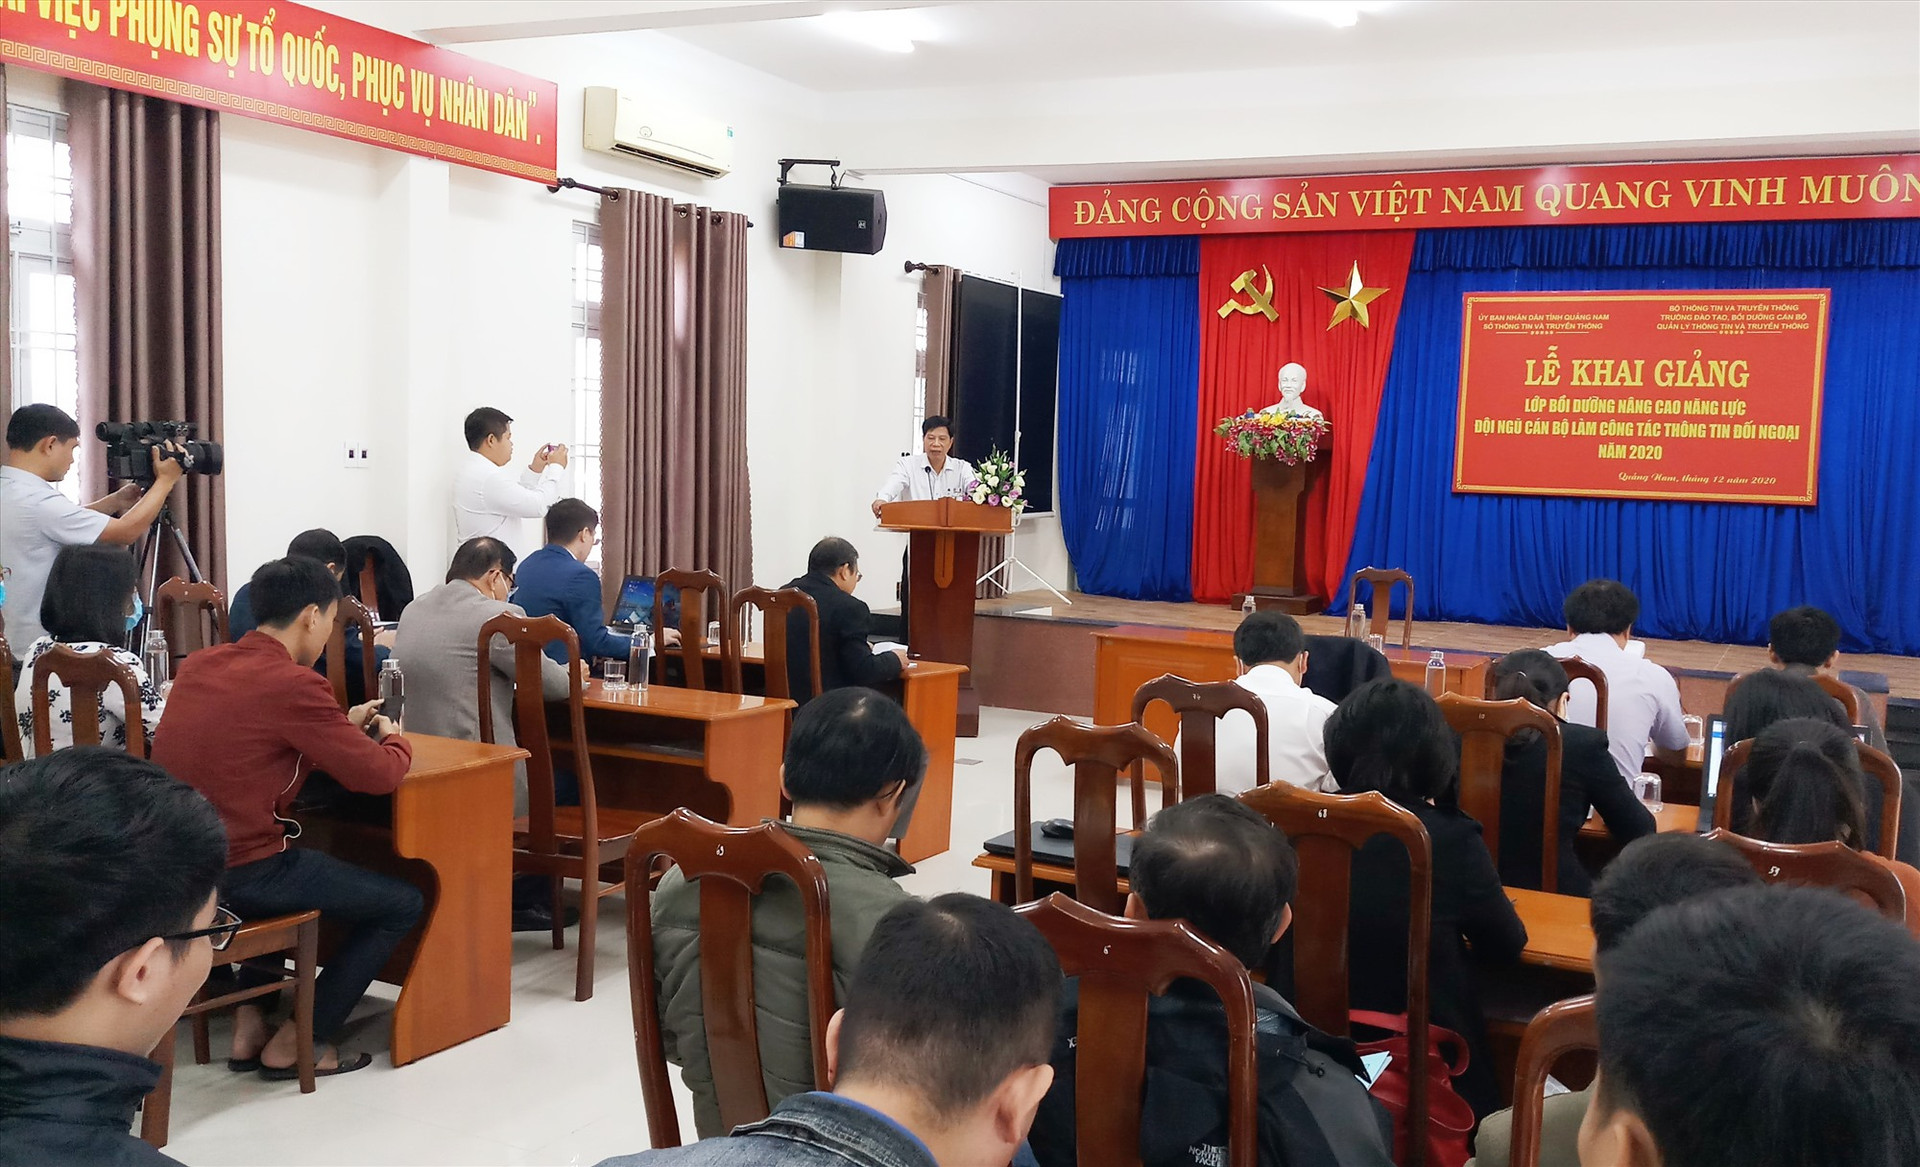 Lớp học được tổ chức nhằm nâng cao năng lực cho cán bộ làm công tác thông tin đối ngoại với Lào trên địa bàn tỉnh. Ảnh: A.N